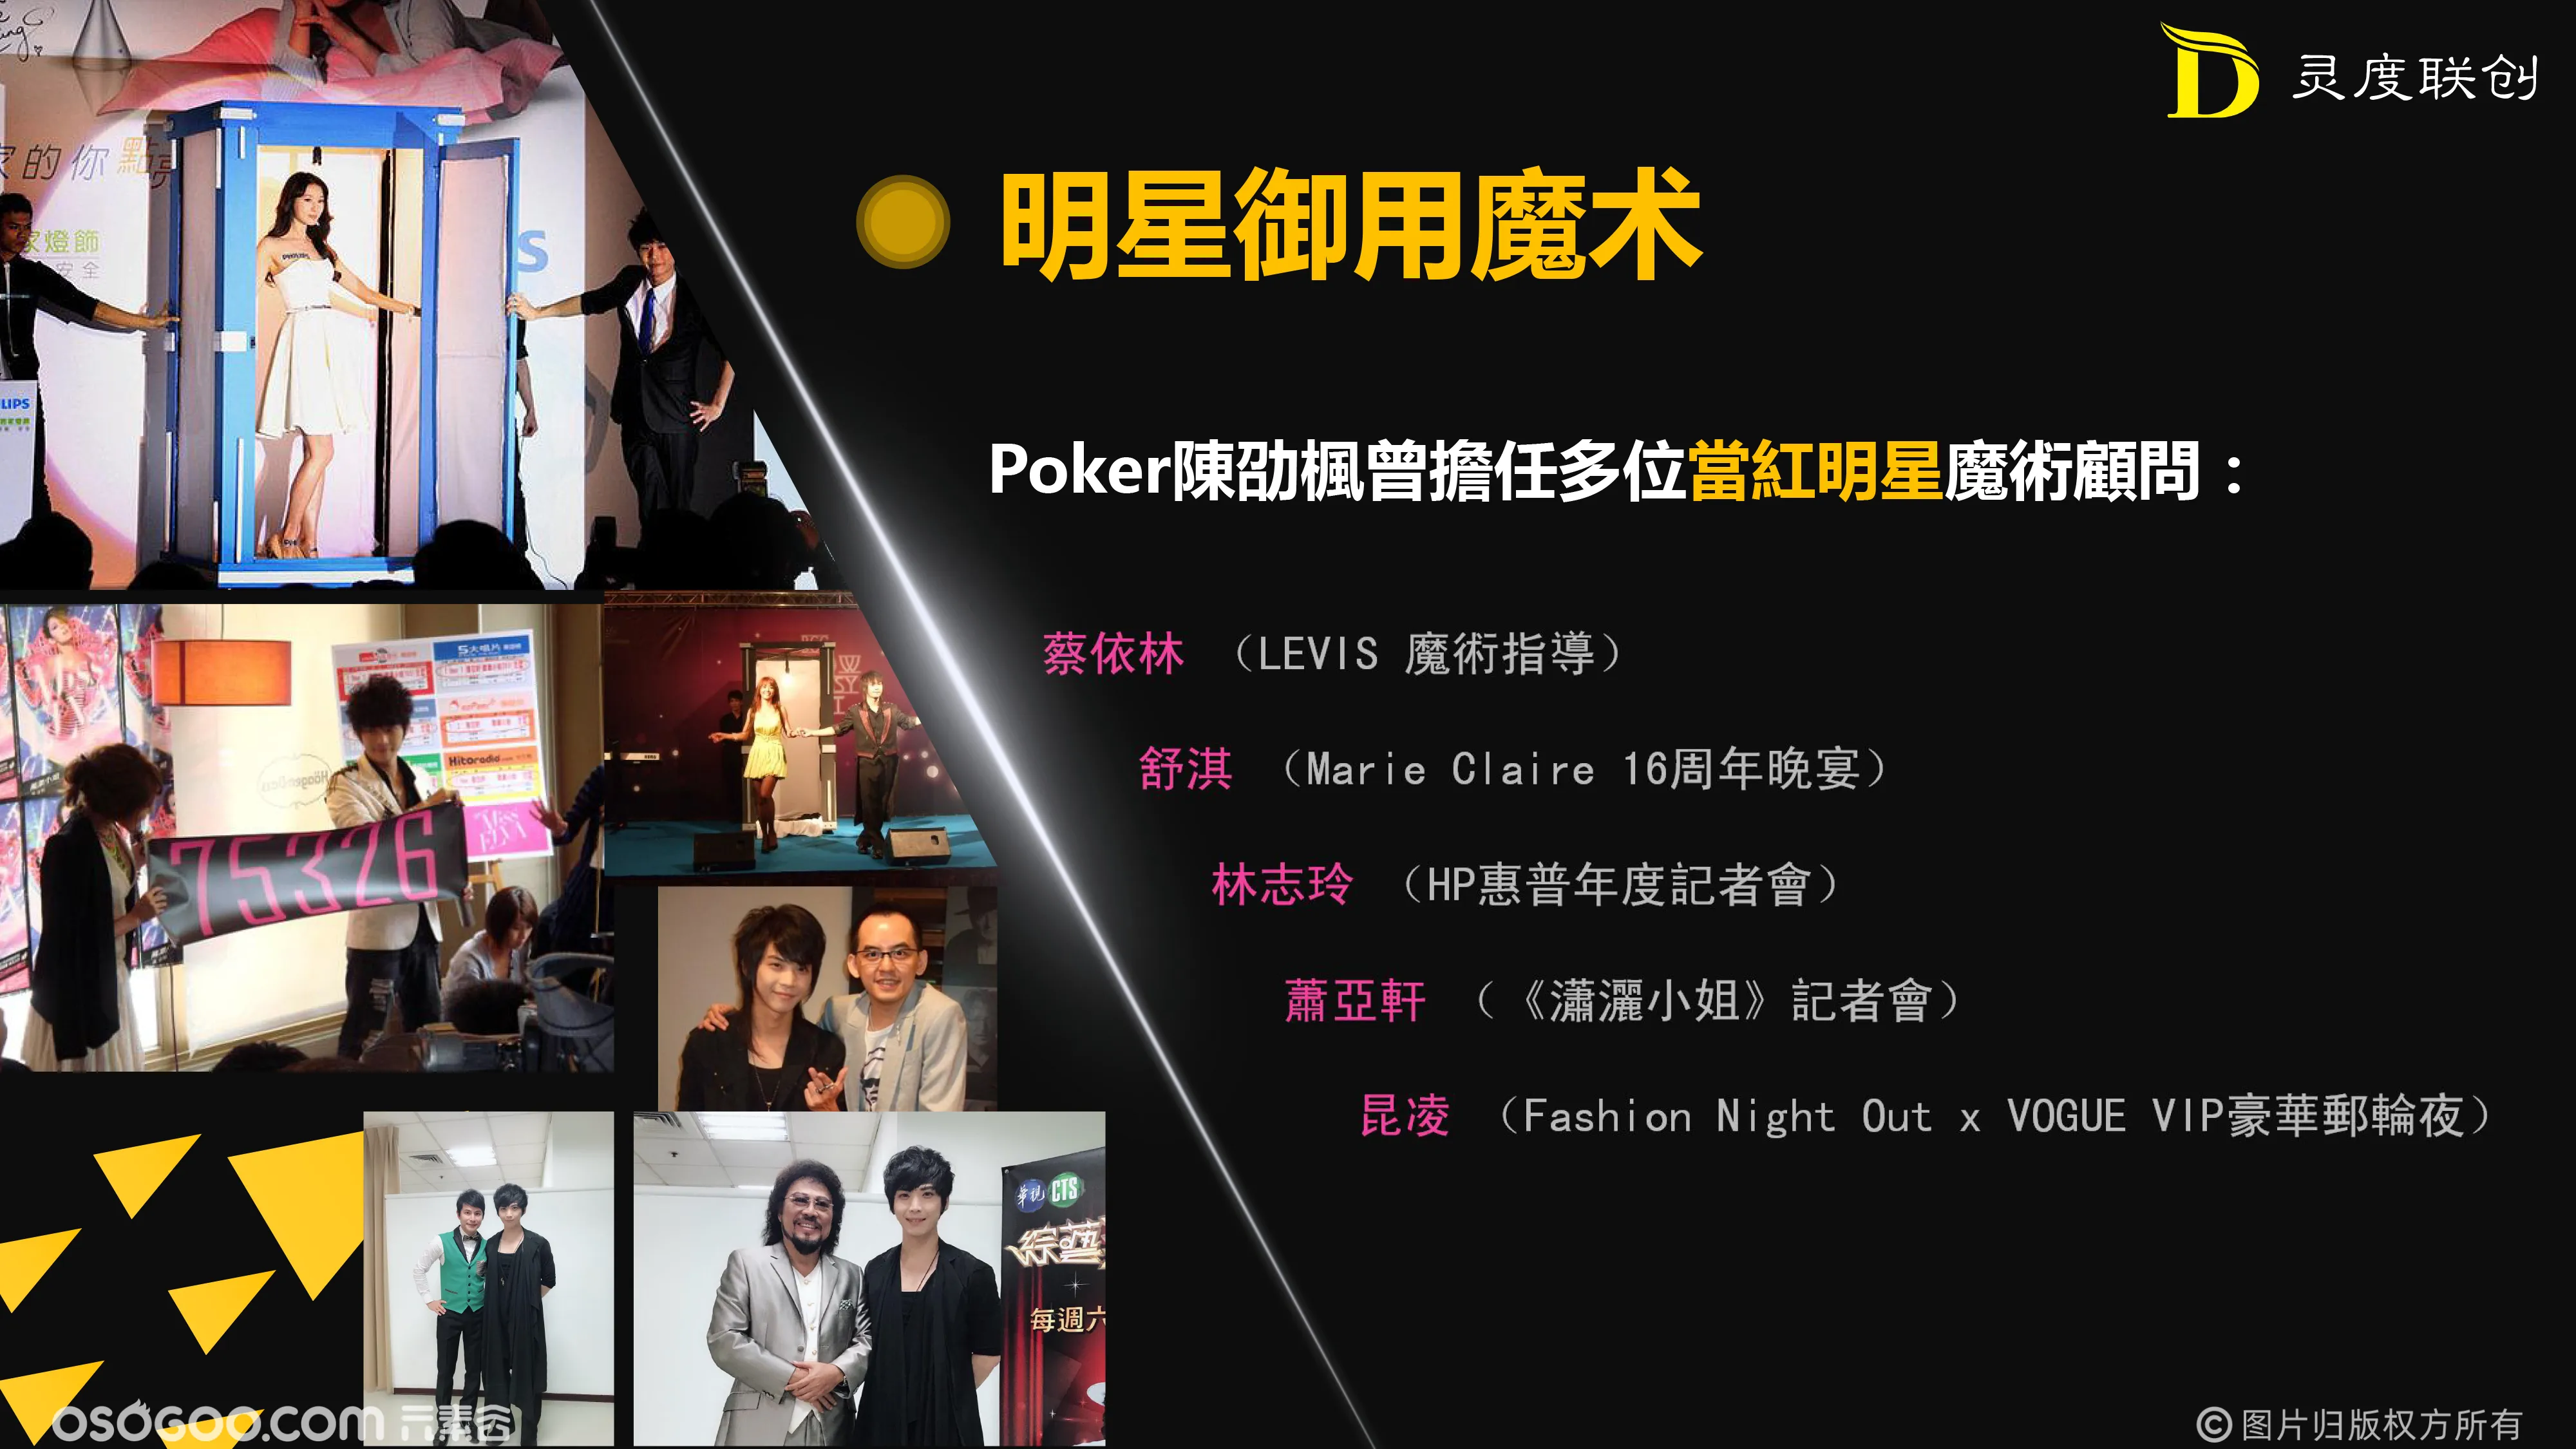 中国台湾魔术明星PokerChen《魔法梦之旅》大型主题魔术